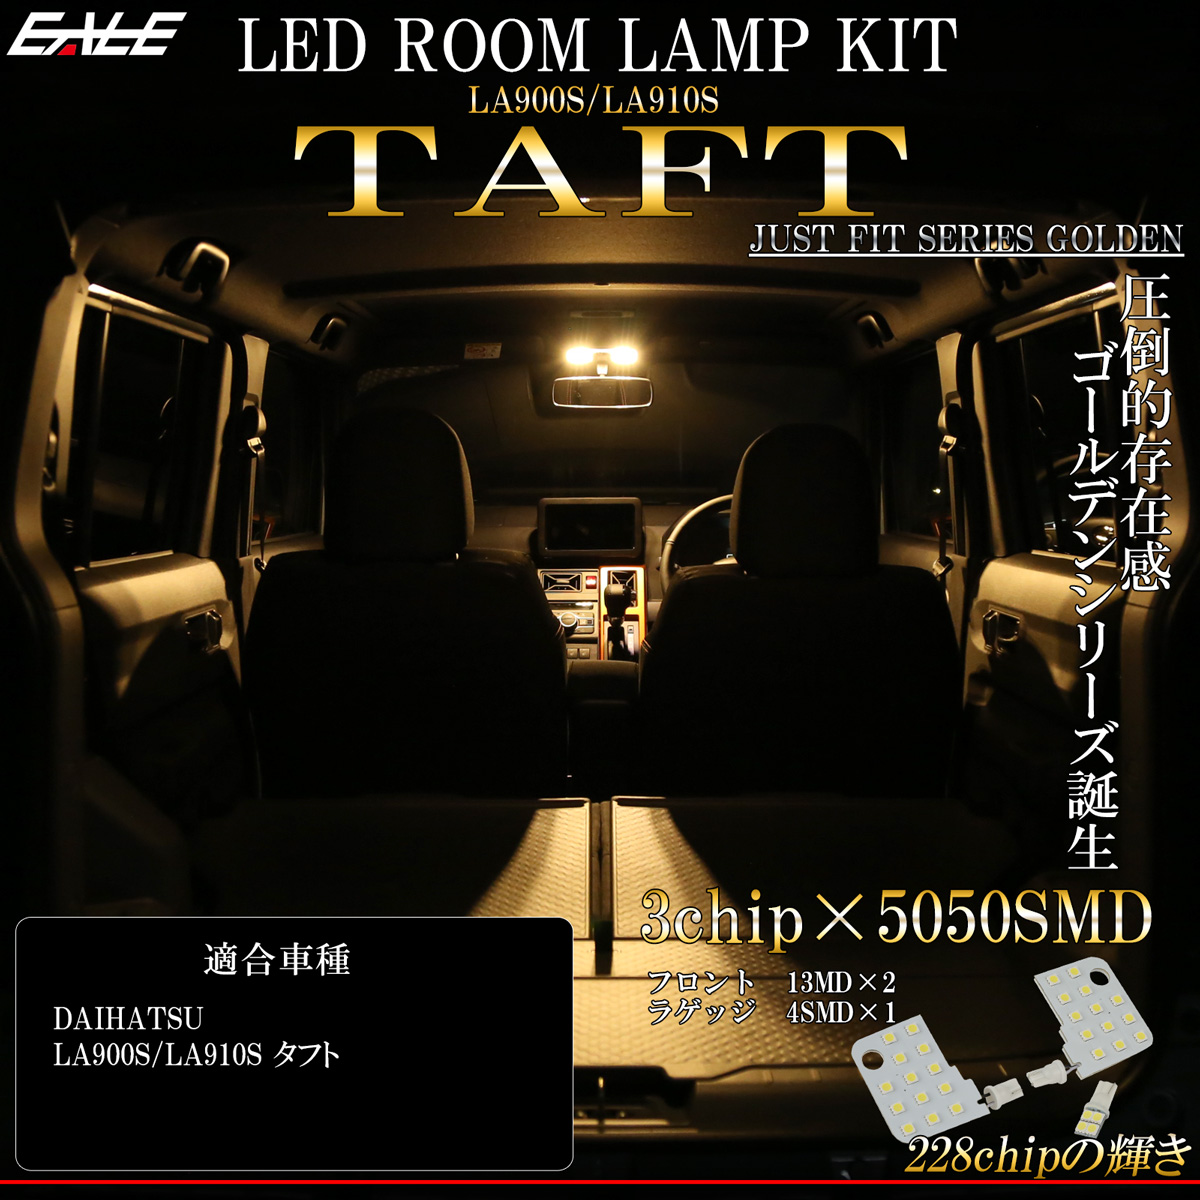 ネコポス可】 LED ルームランプ タフト TAFT ダイハツ LA900S LA910S 専用設計 3000K 電球色 ウォームホワイト R-494